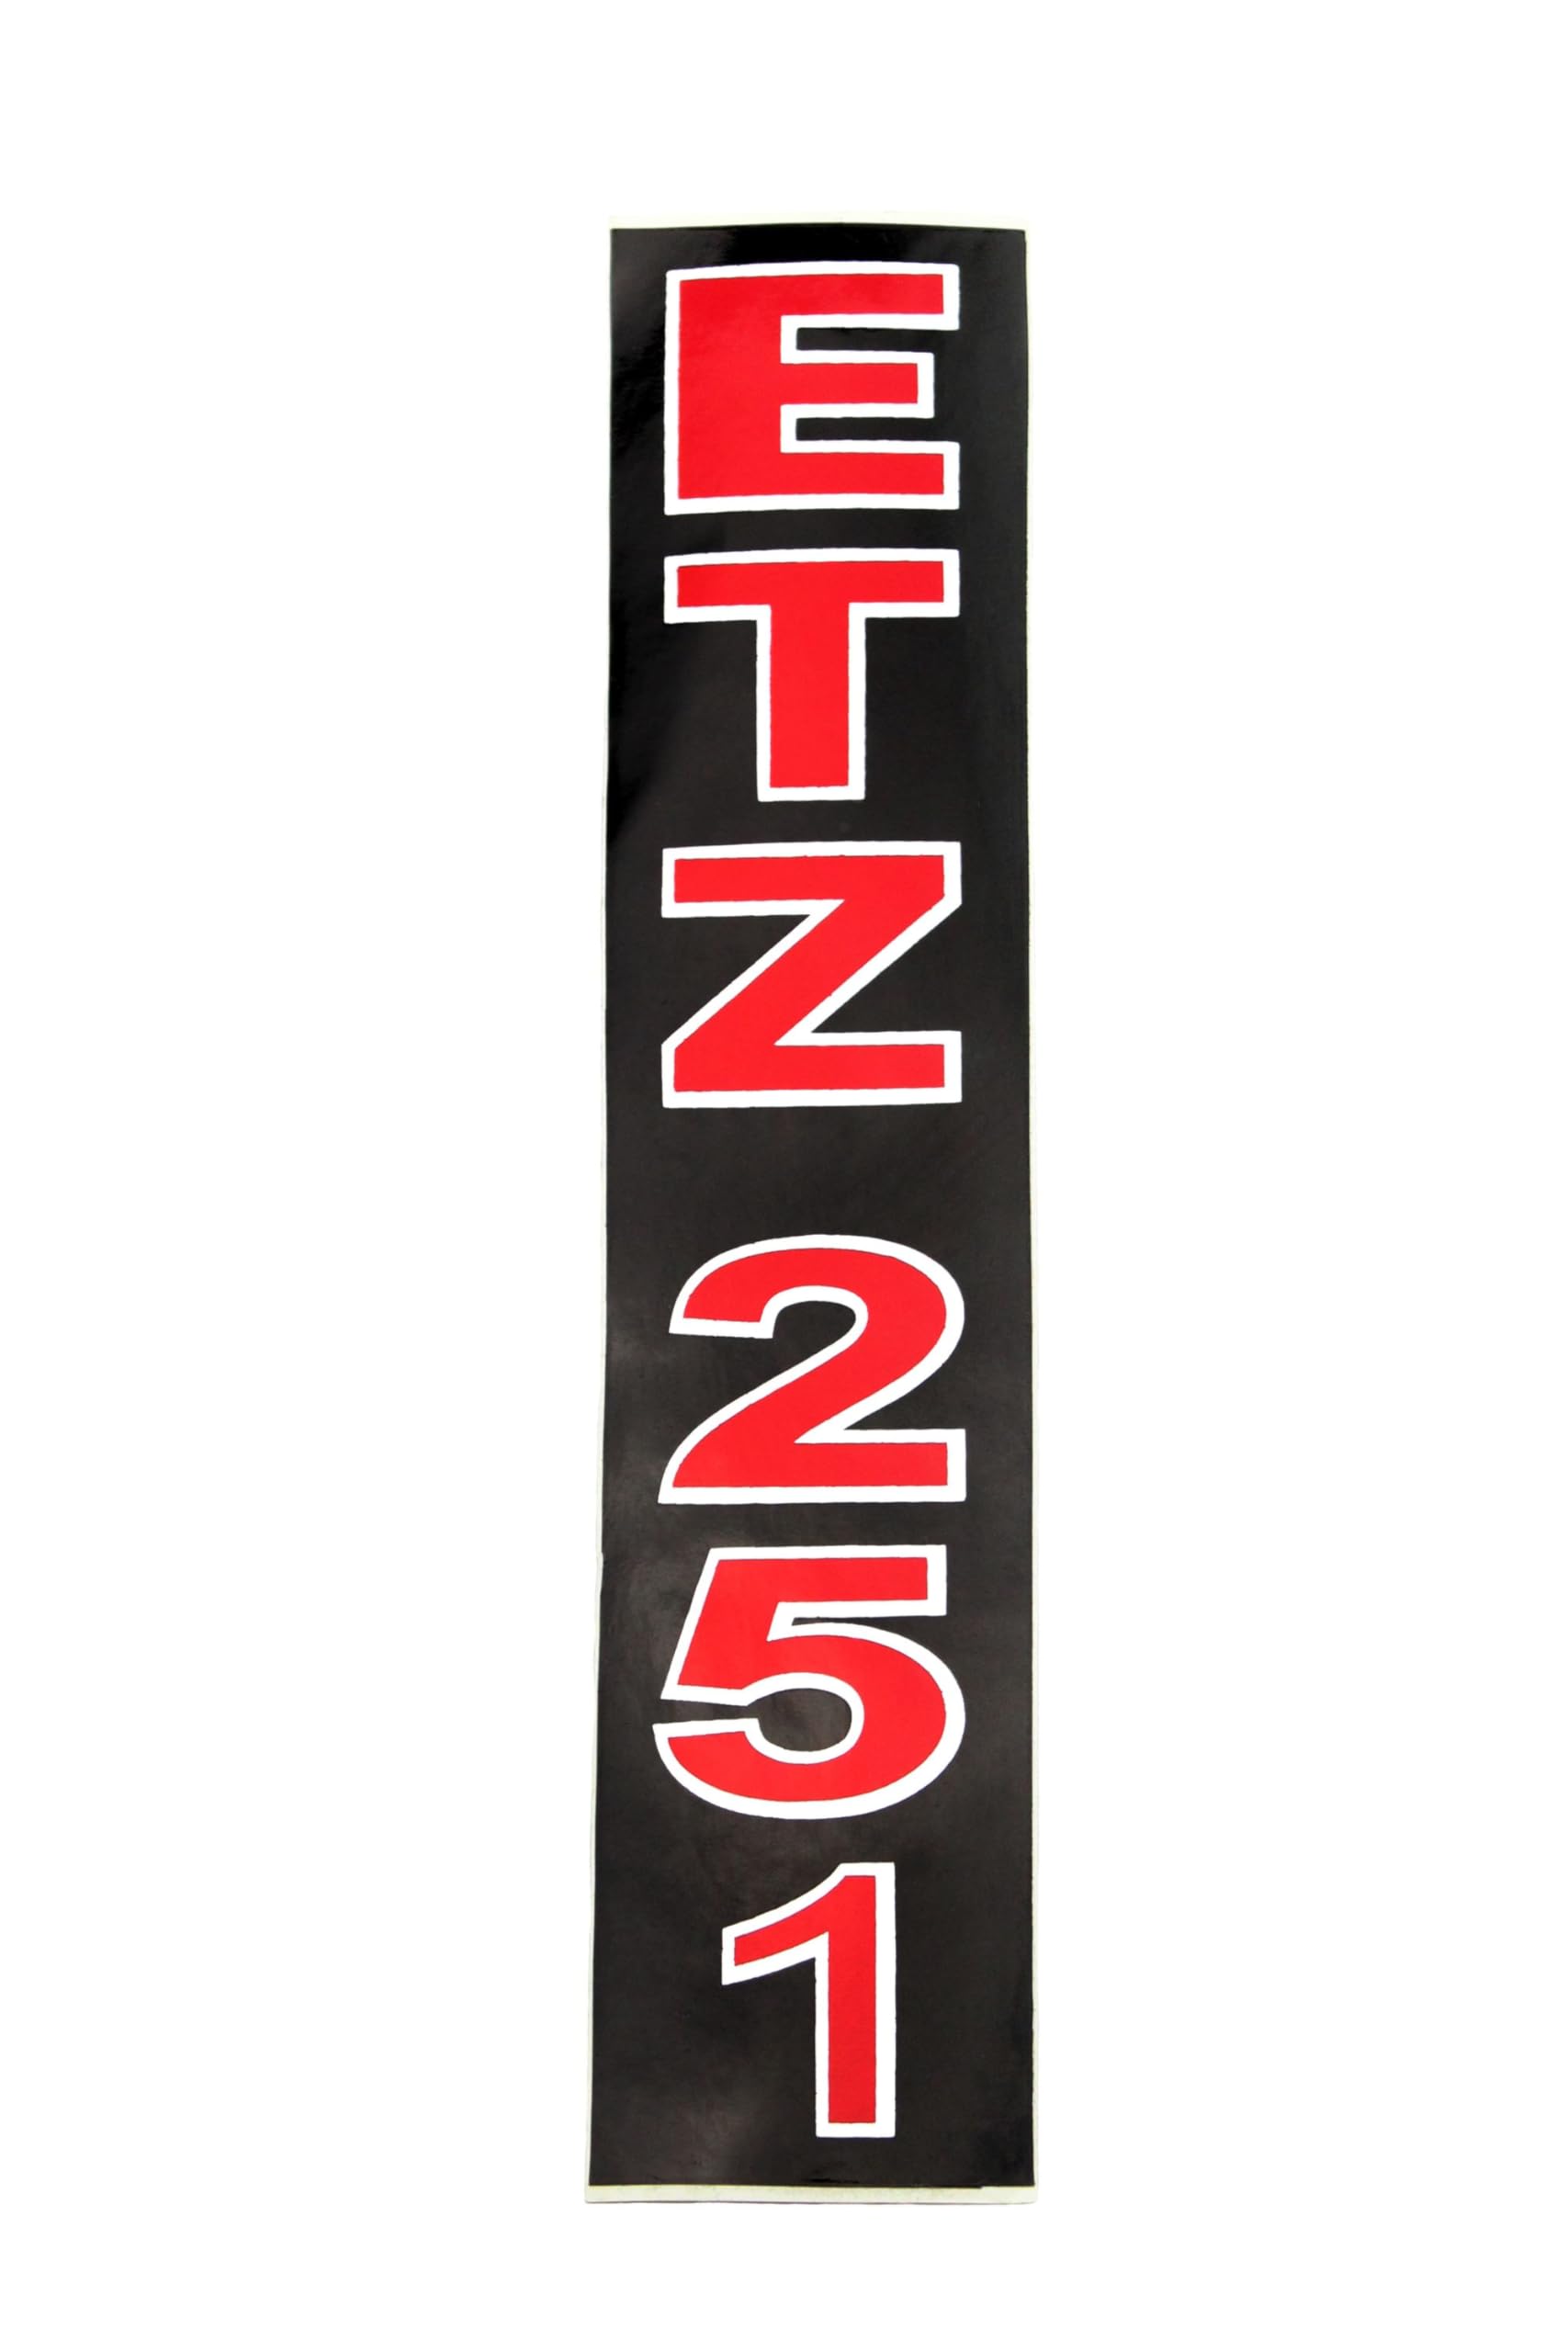 Aufkleber Klebefolie MZ - ETZ 251 - für Stoßdämpfer von BISOMO